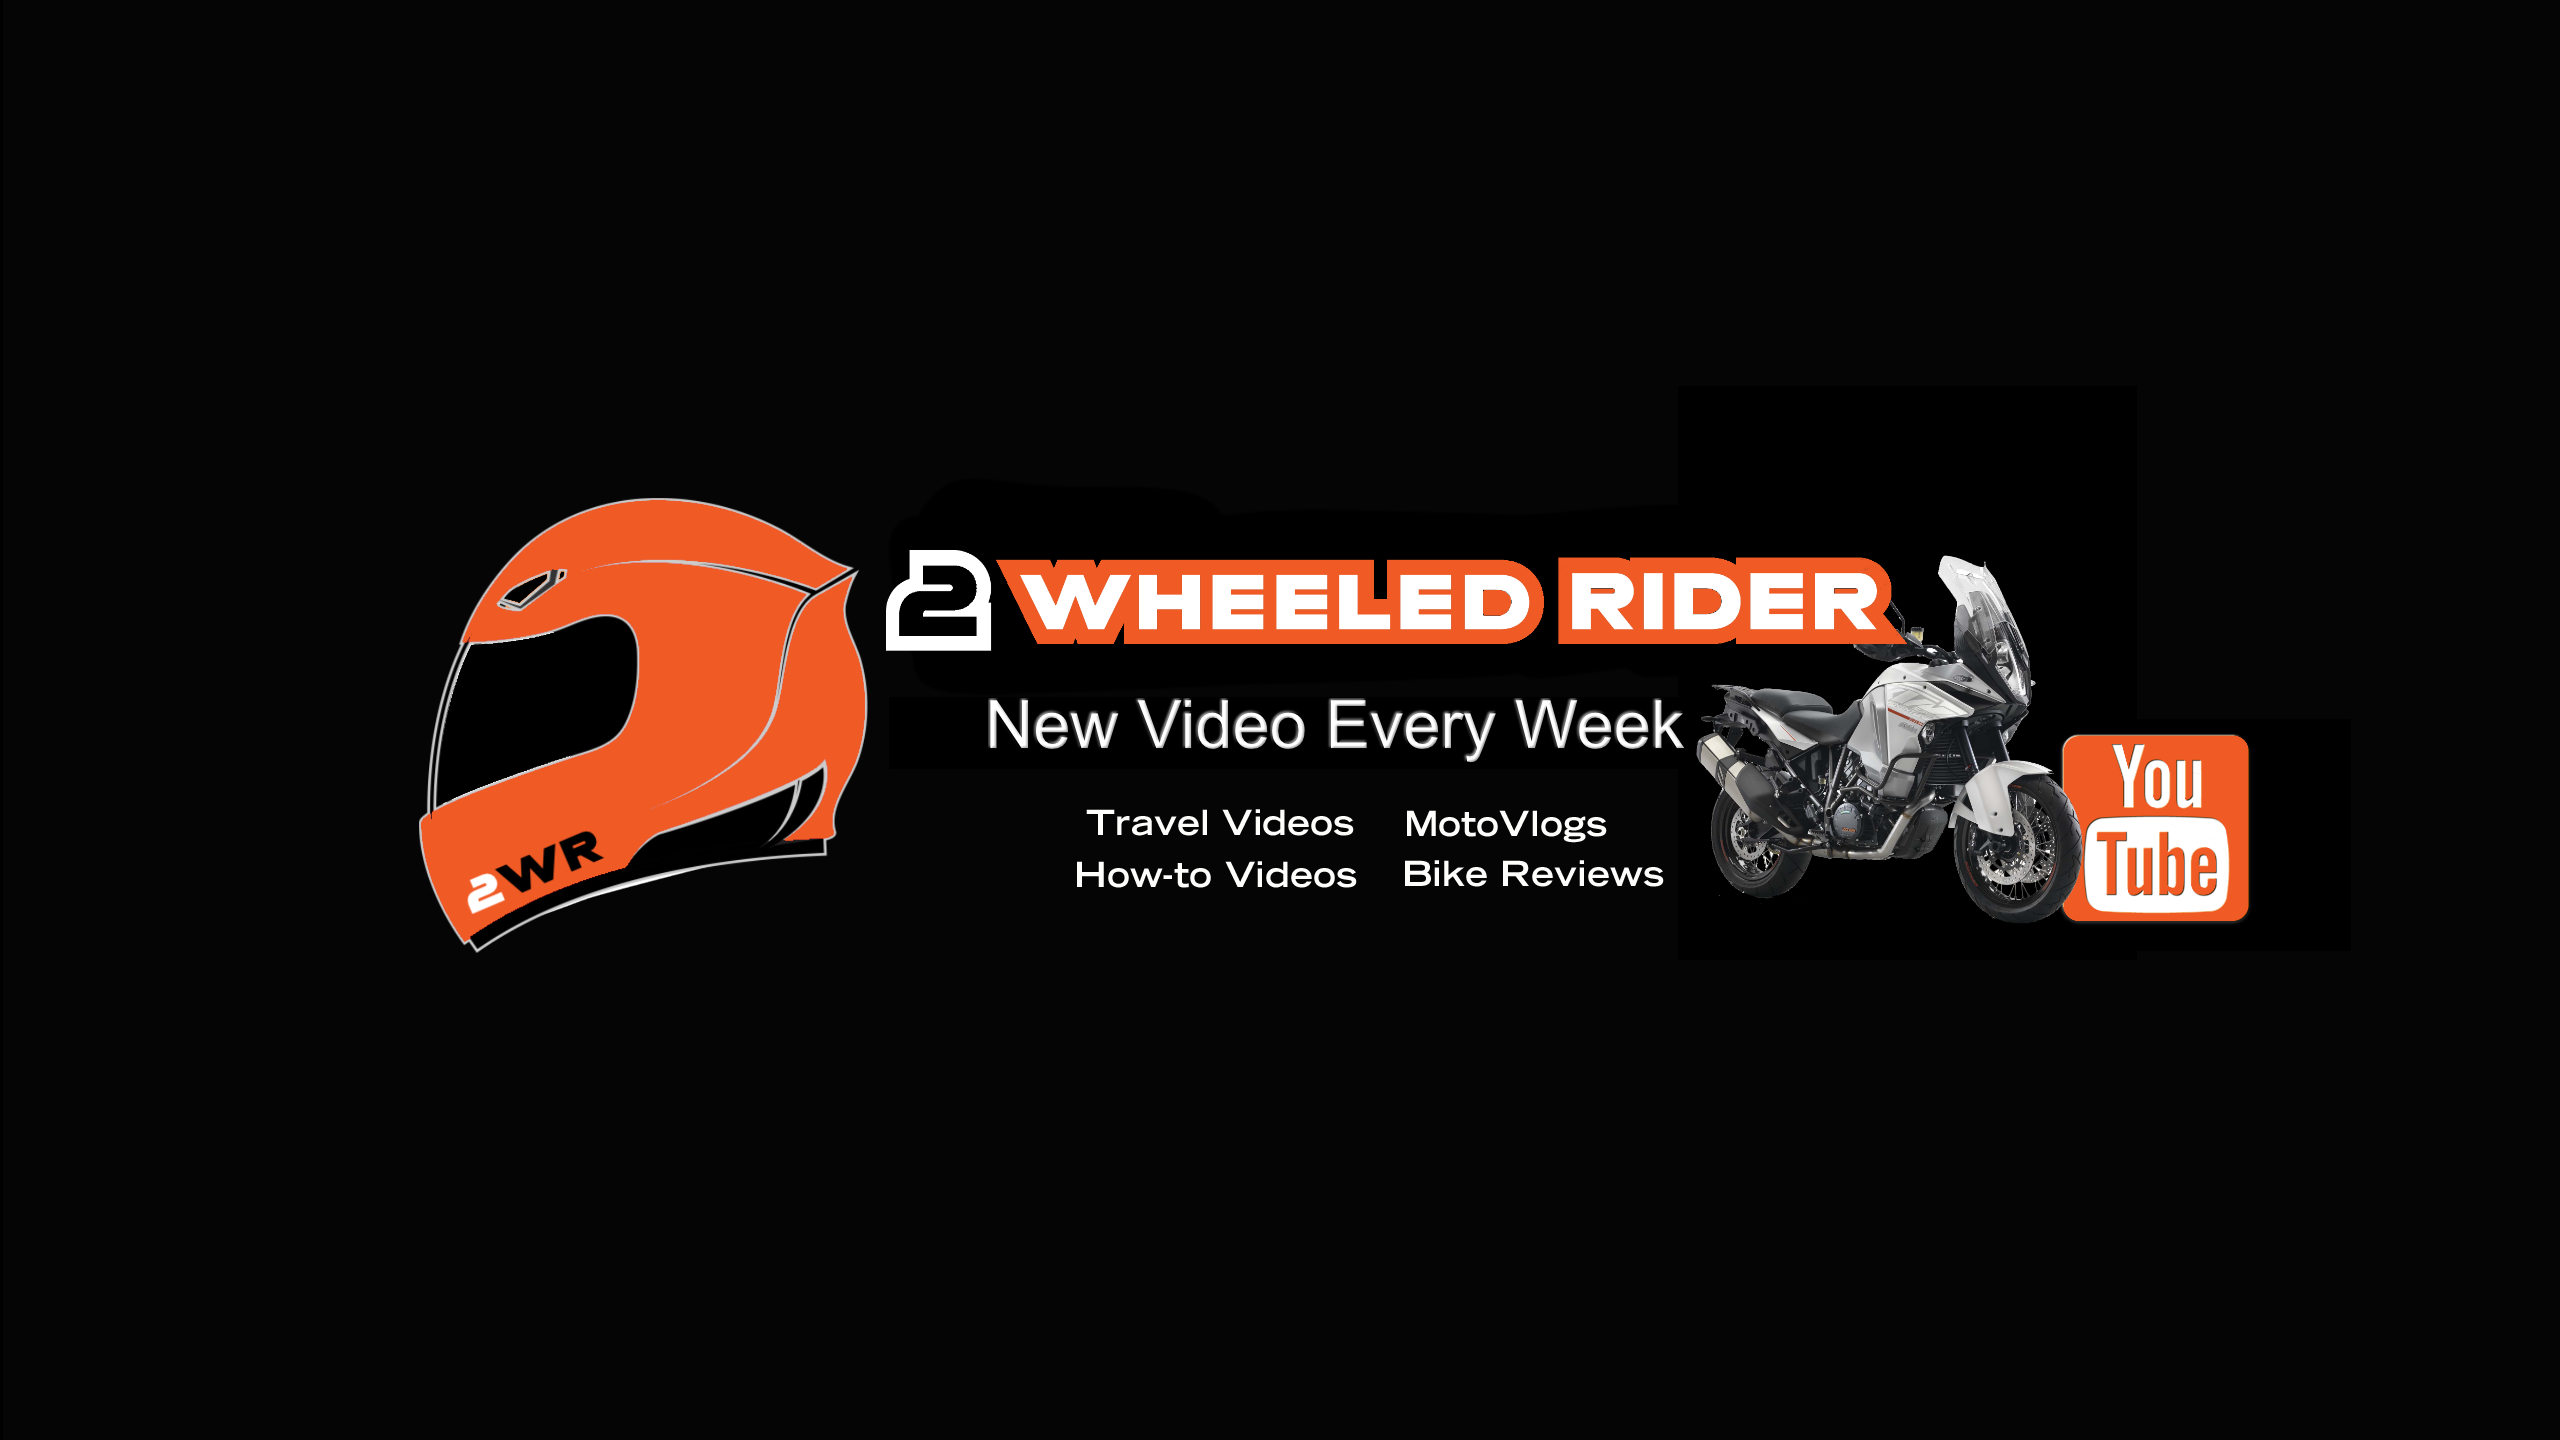 2wr Youtube 2 Wheeled Rider